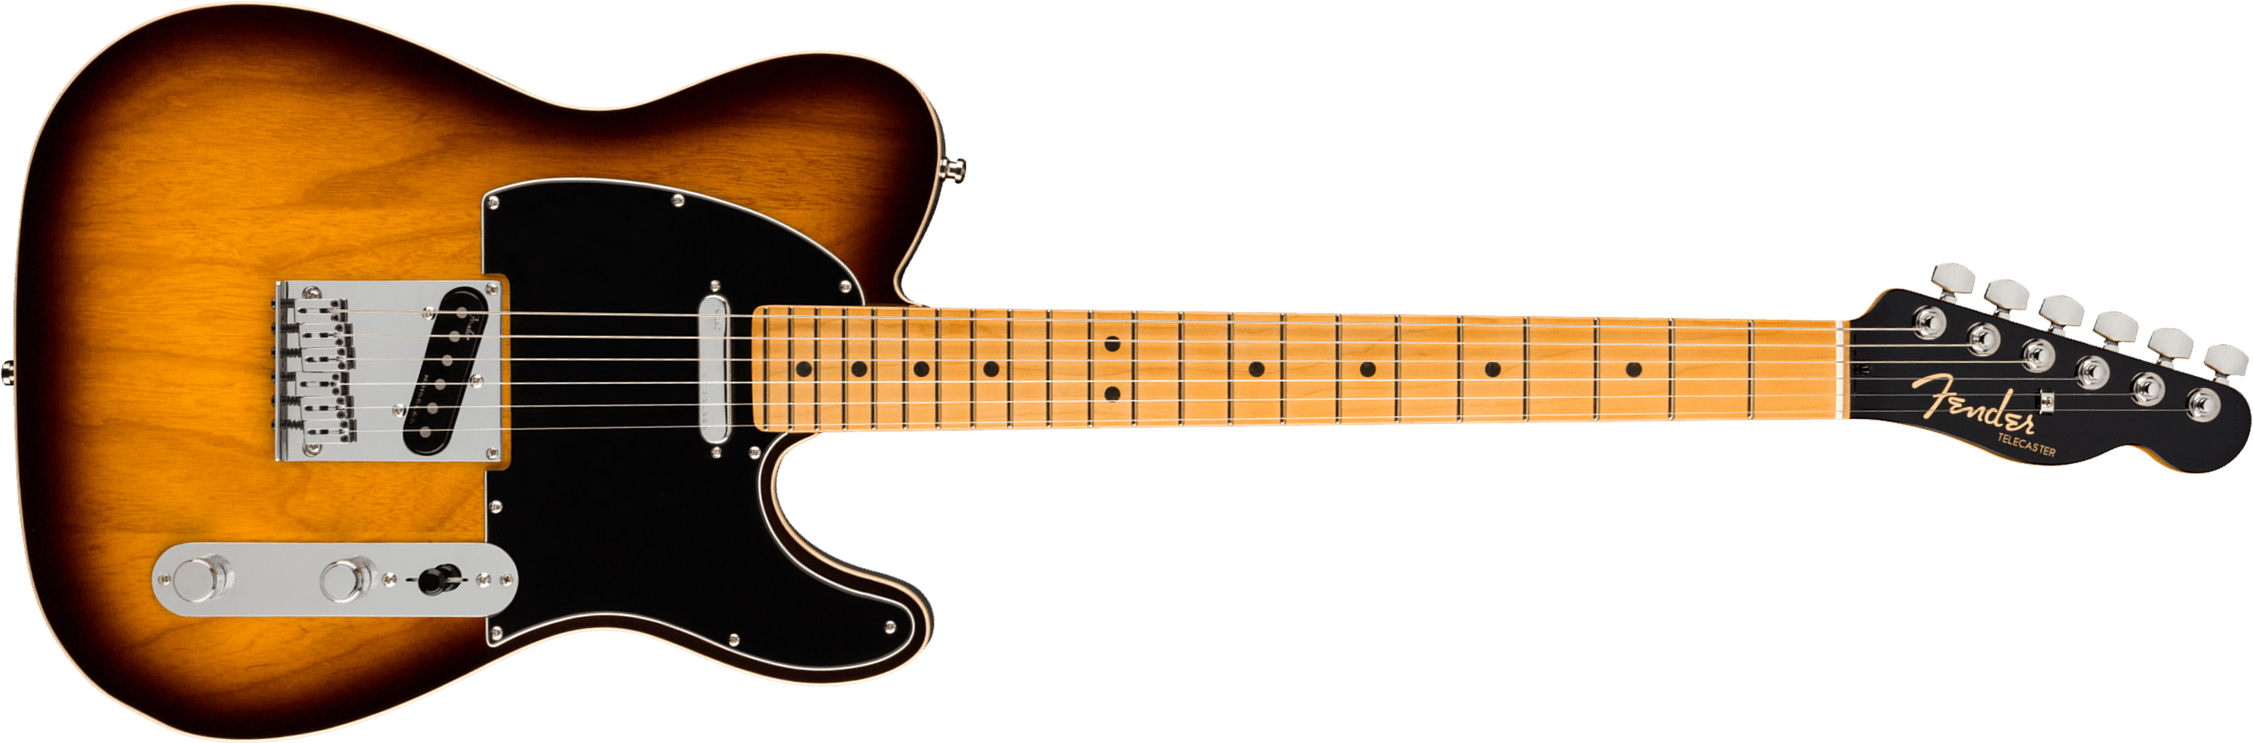 Fender Tele American Ultra Luxe Usa Mn +etui - 2-color Sunburst - E-Gitarre in Teleform - Main picture